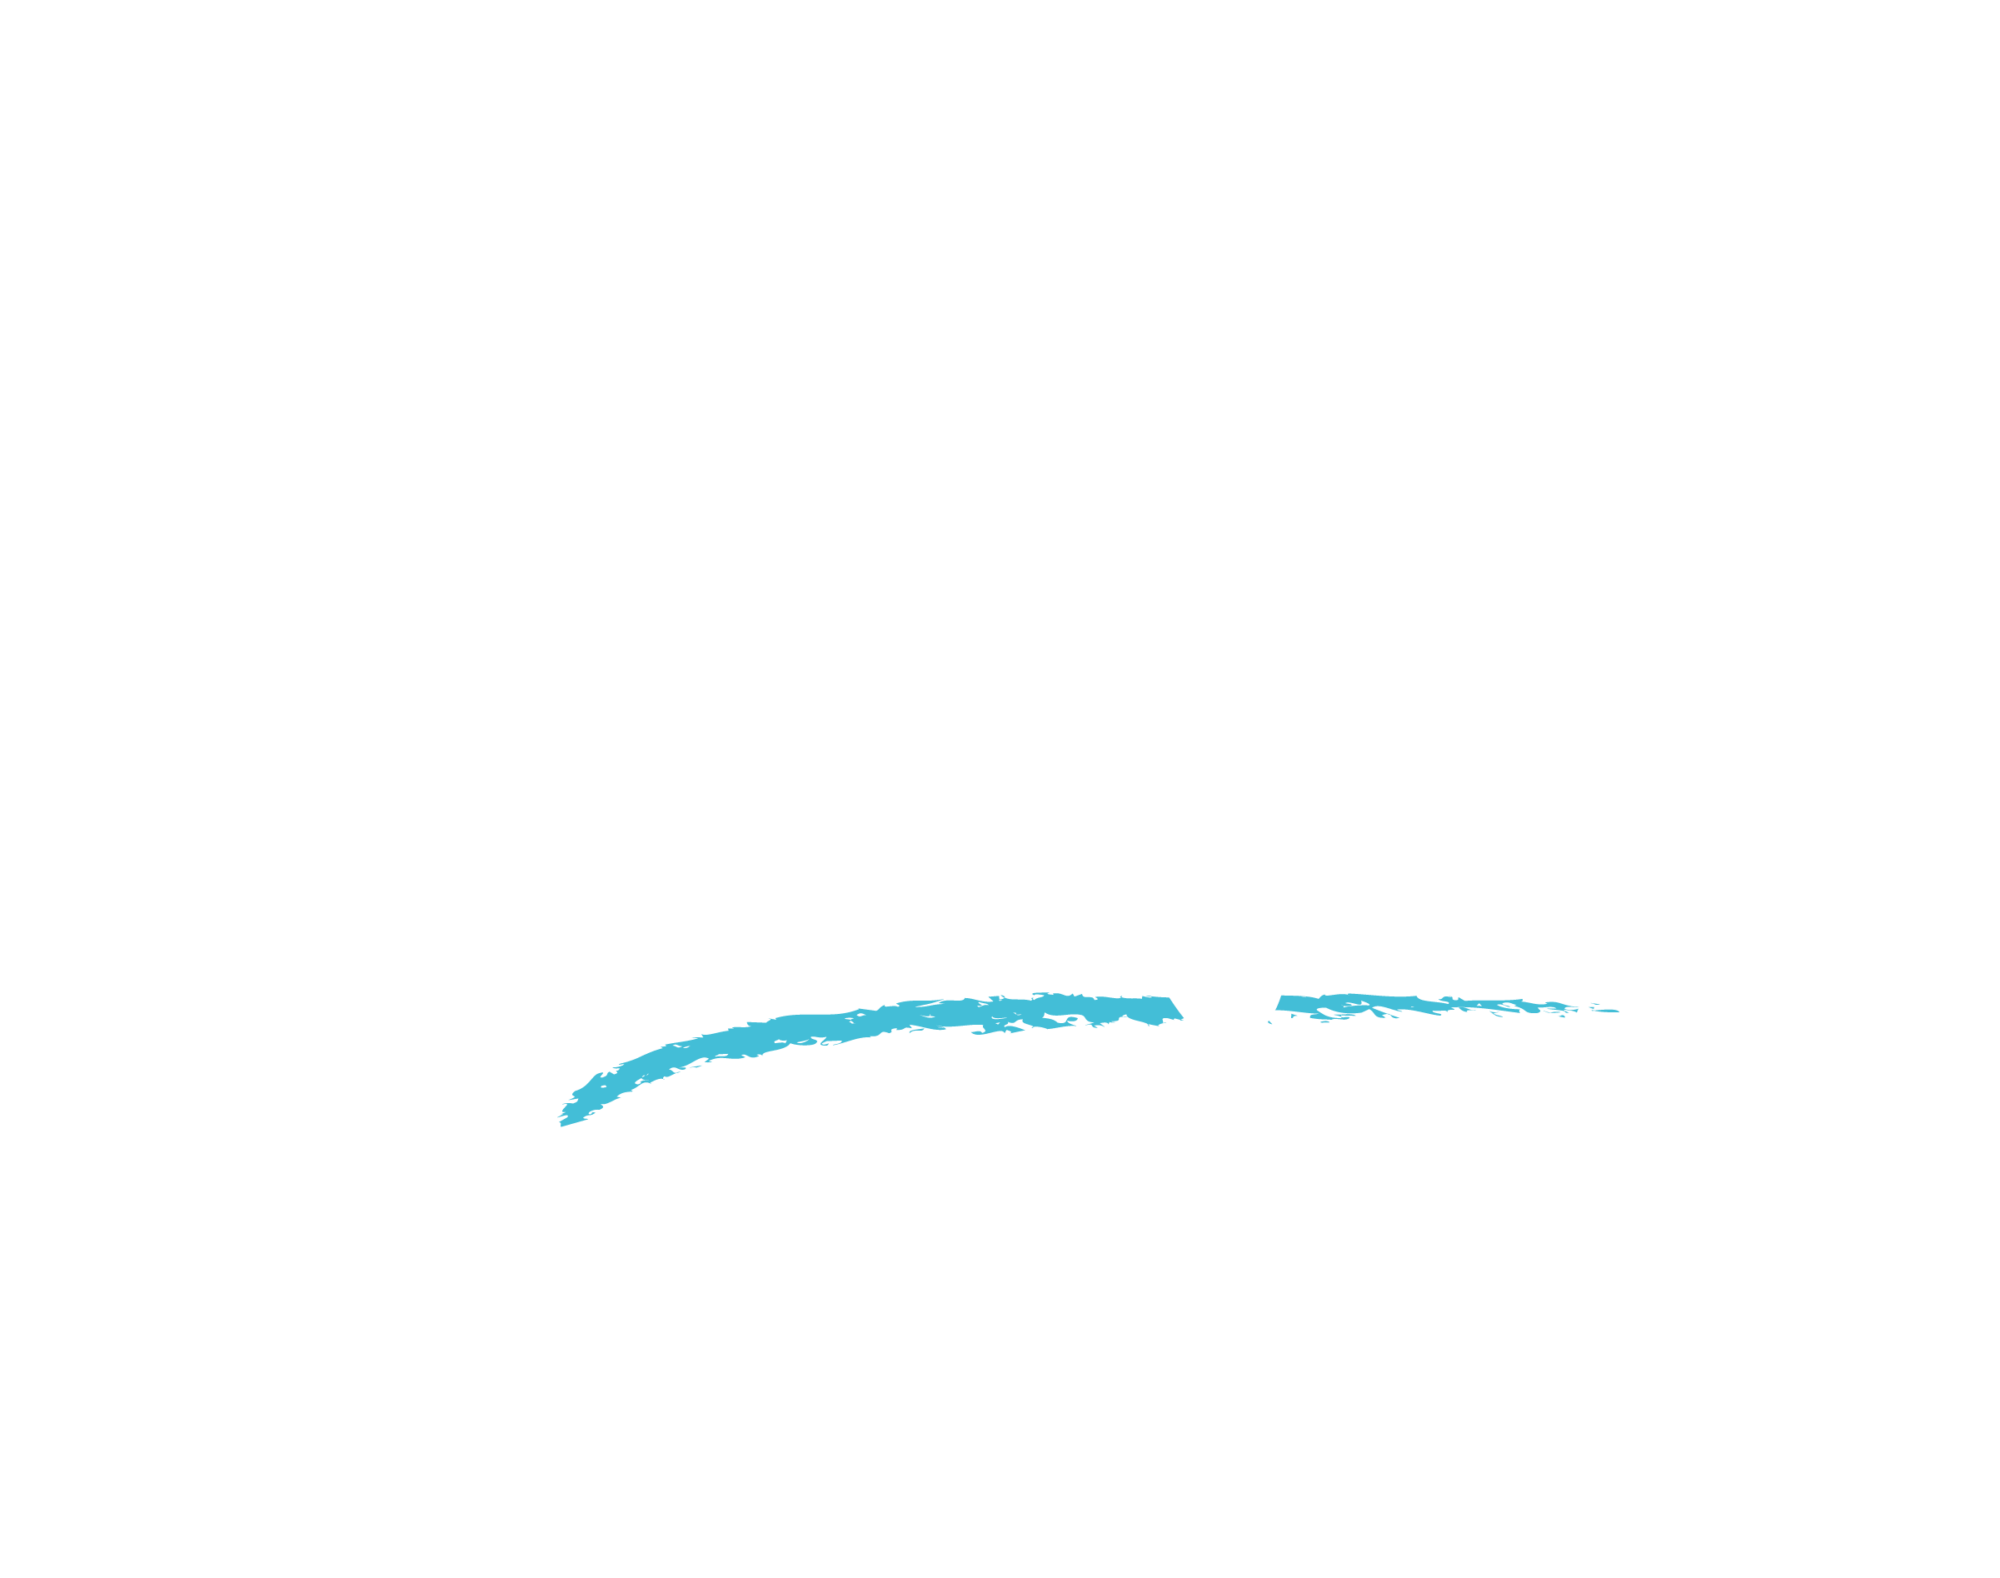 LP] - Tanalousa+ - cursos